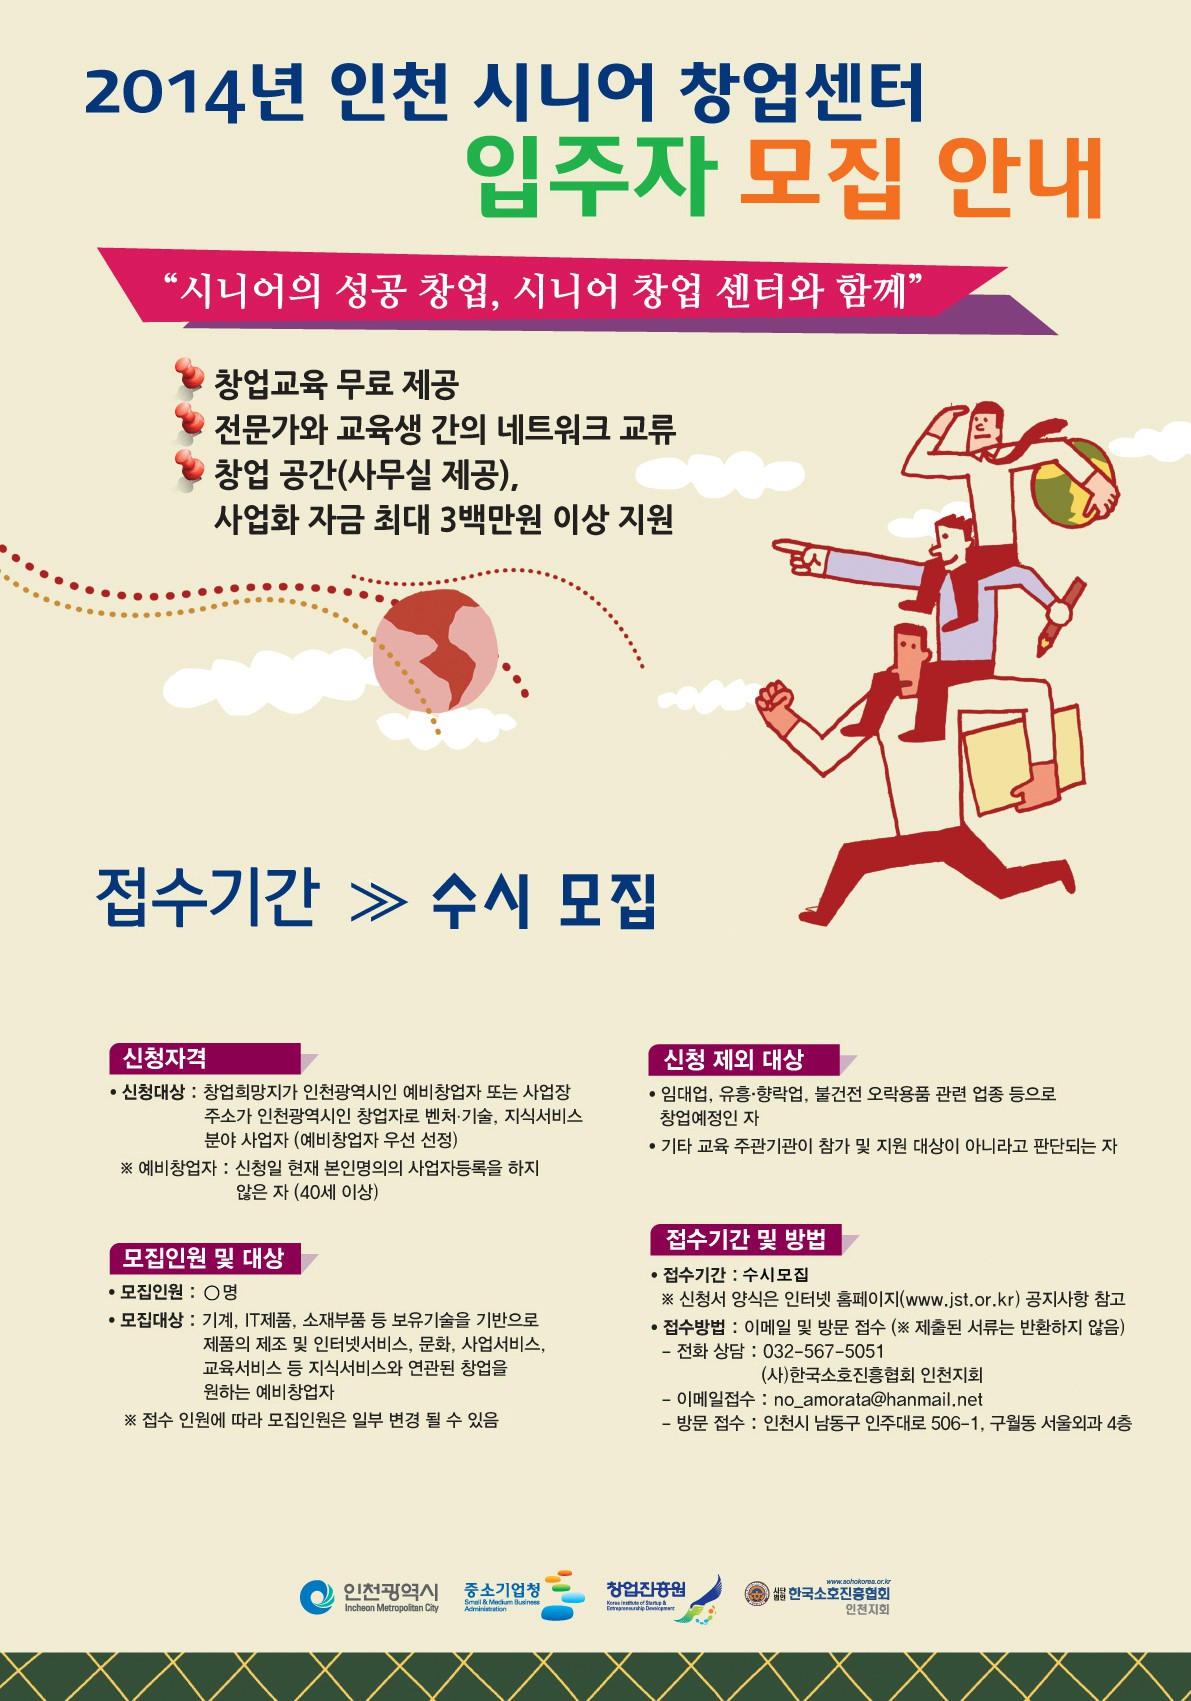 2014 인천시니어창업센터 입주기업 수시 모집